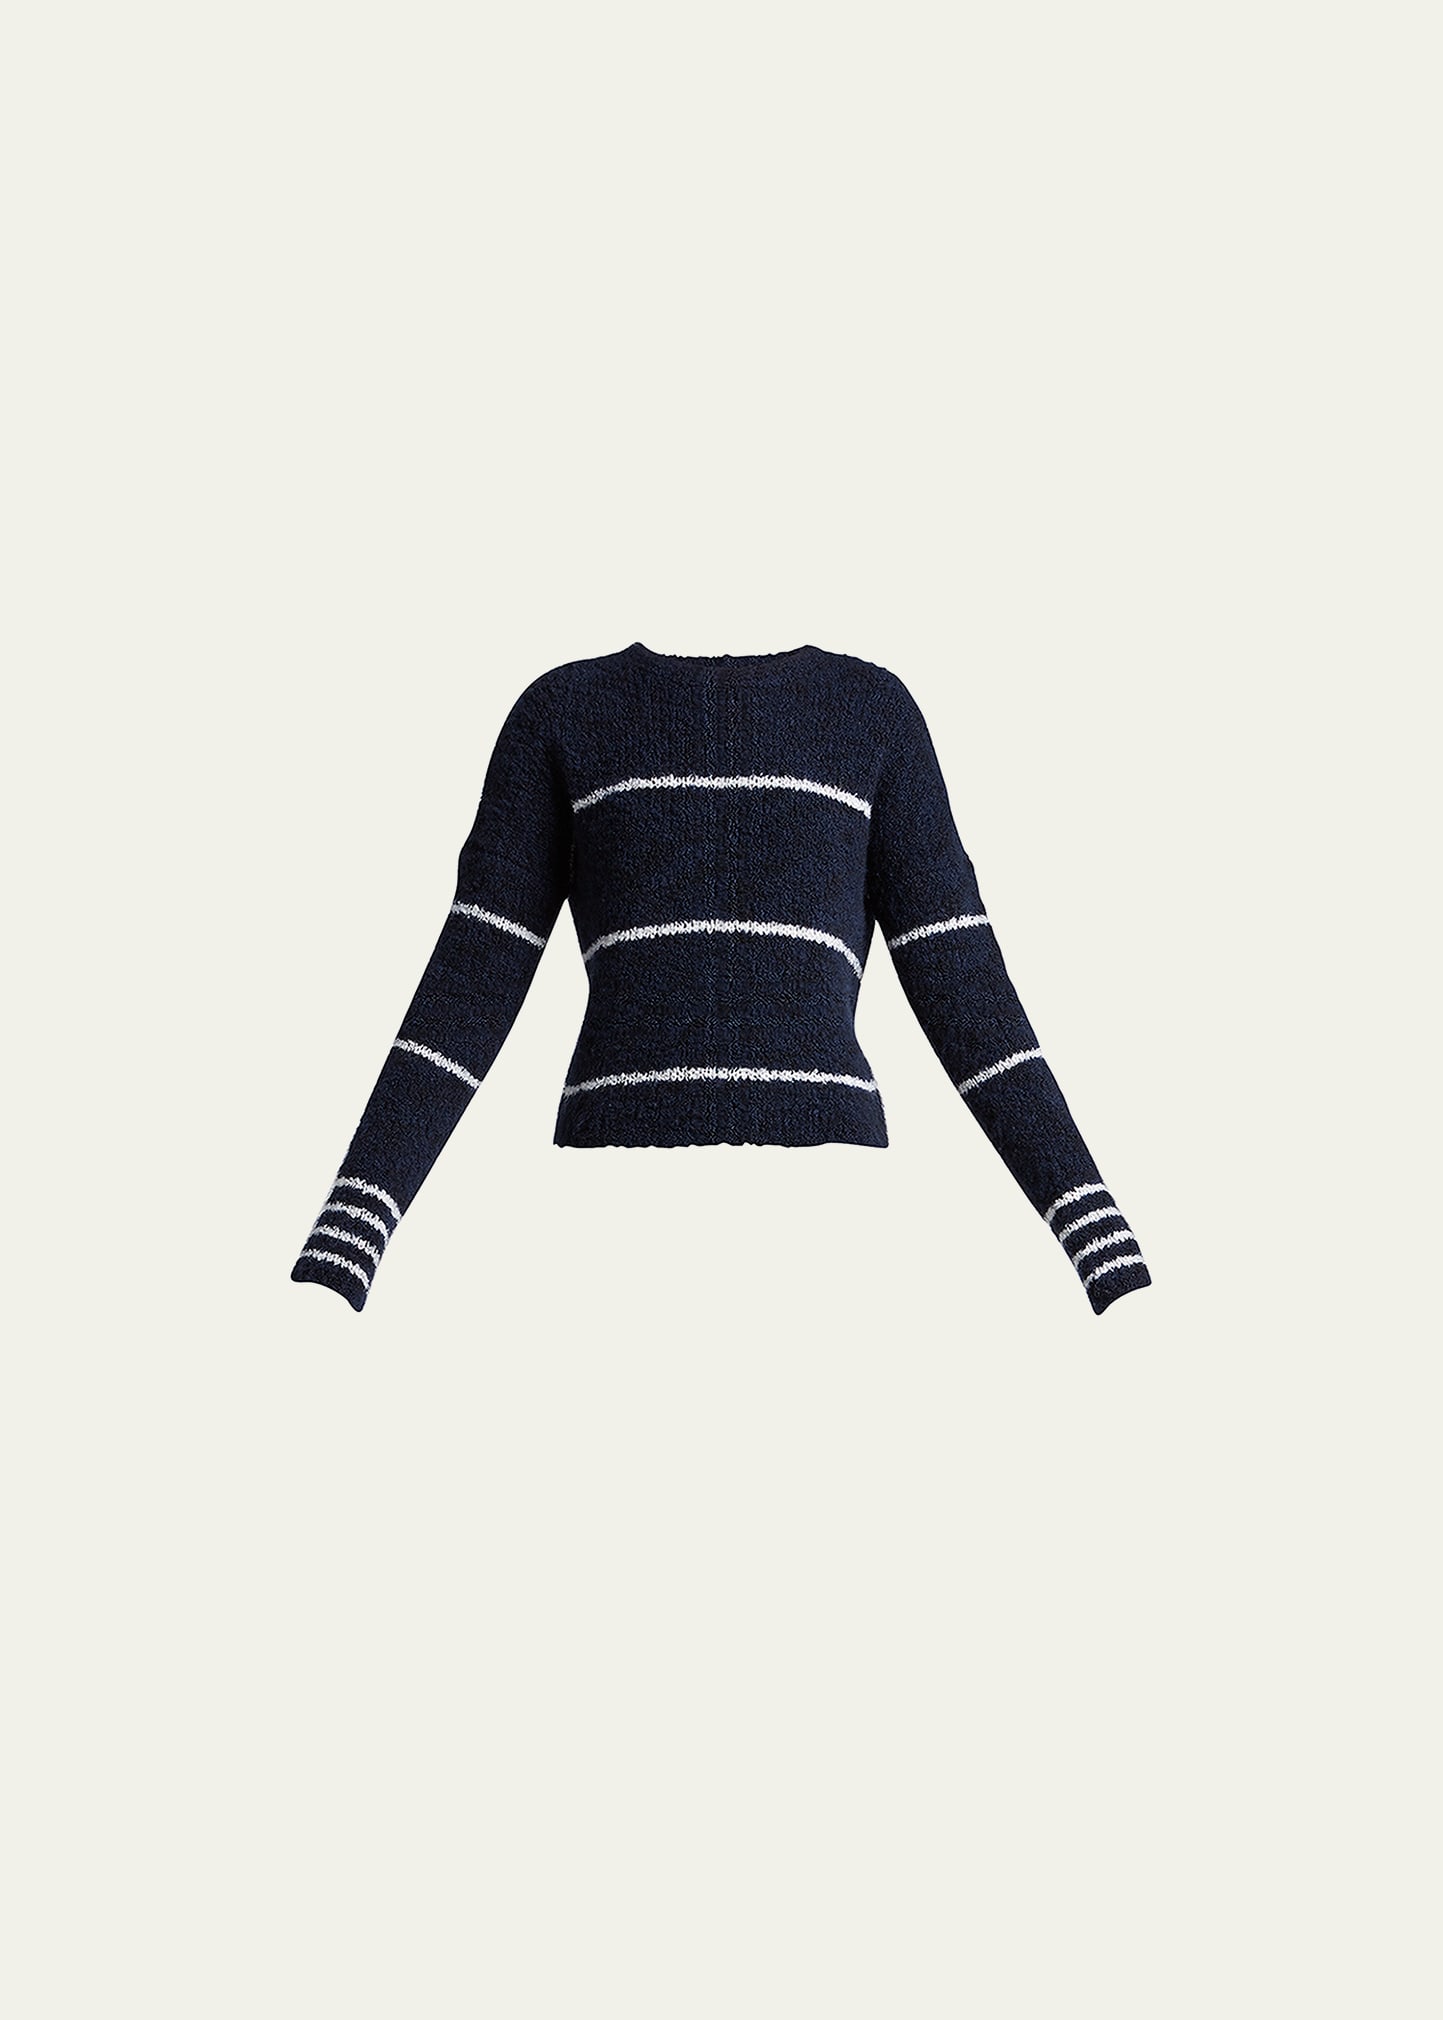 Stripe Cashmere Pullover